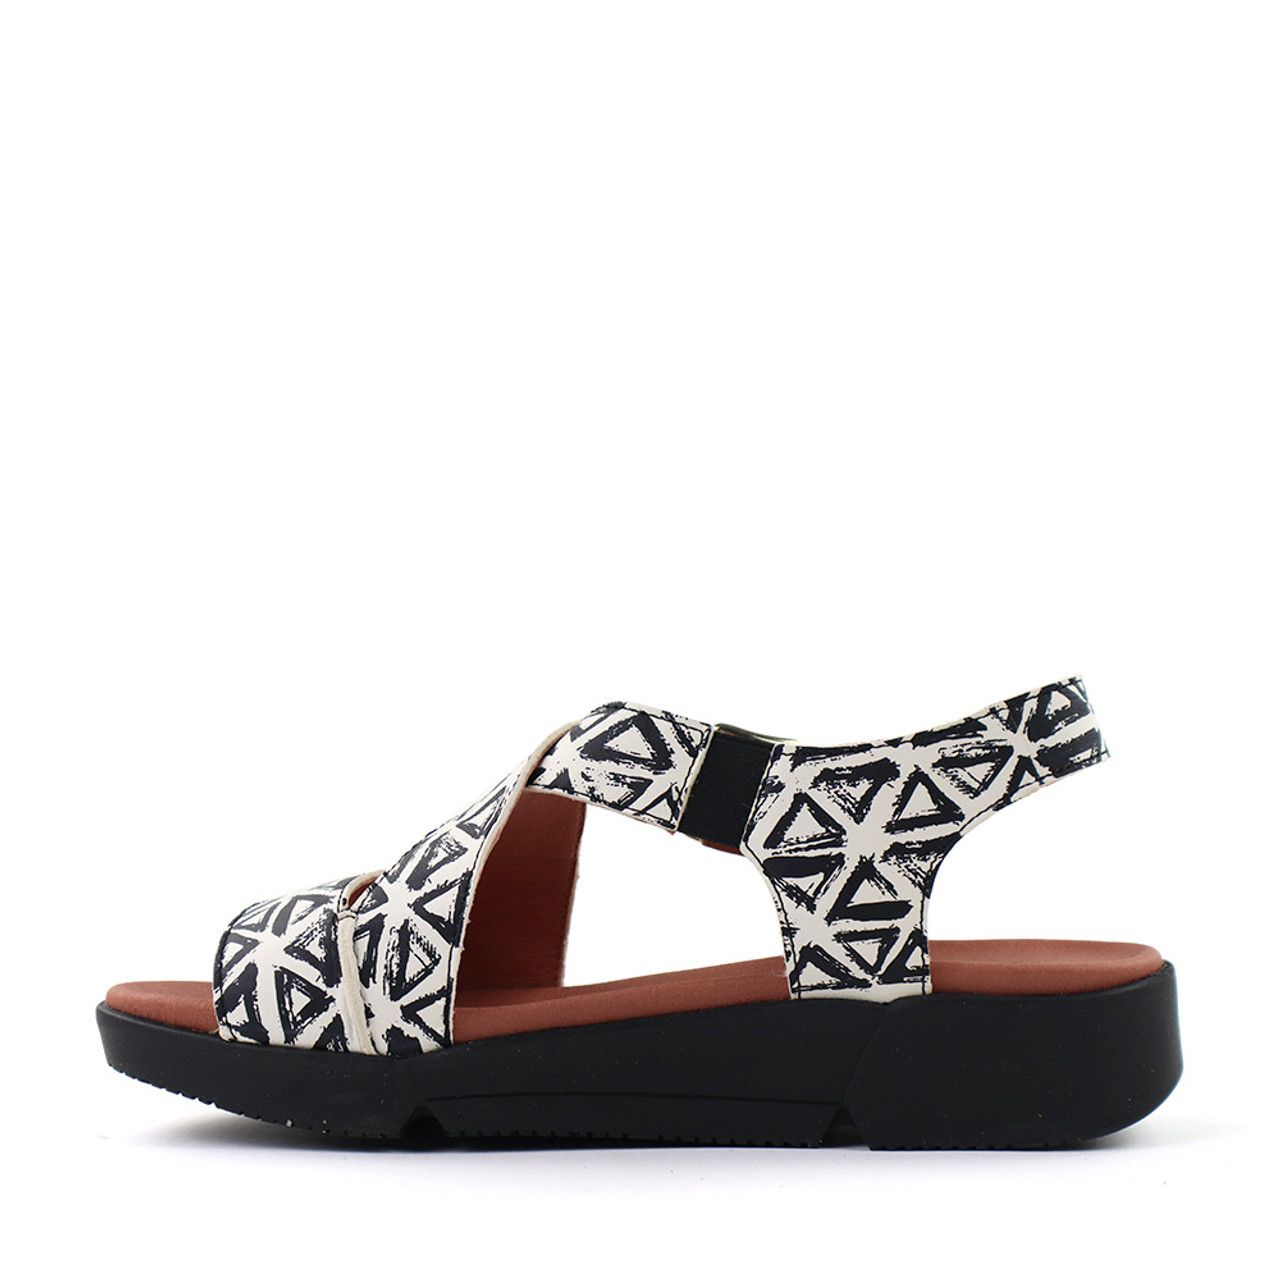 Hirica Florence Sandal in Aztec - Hanig's Footwear